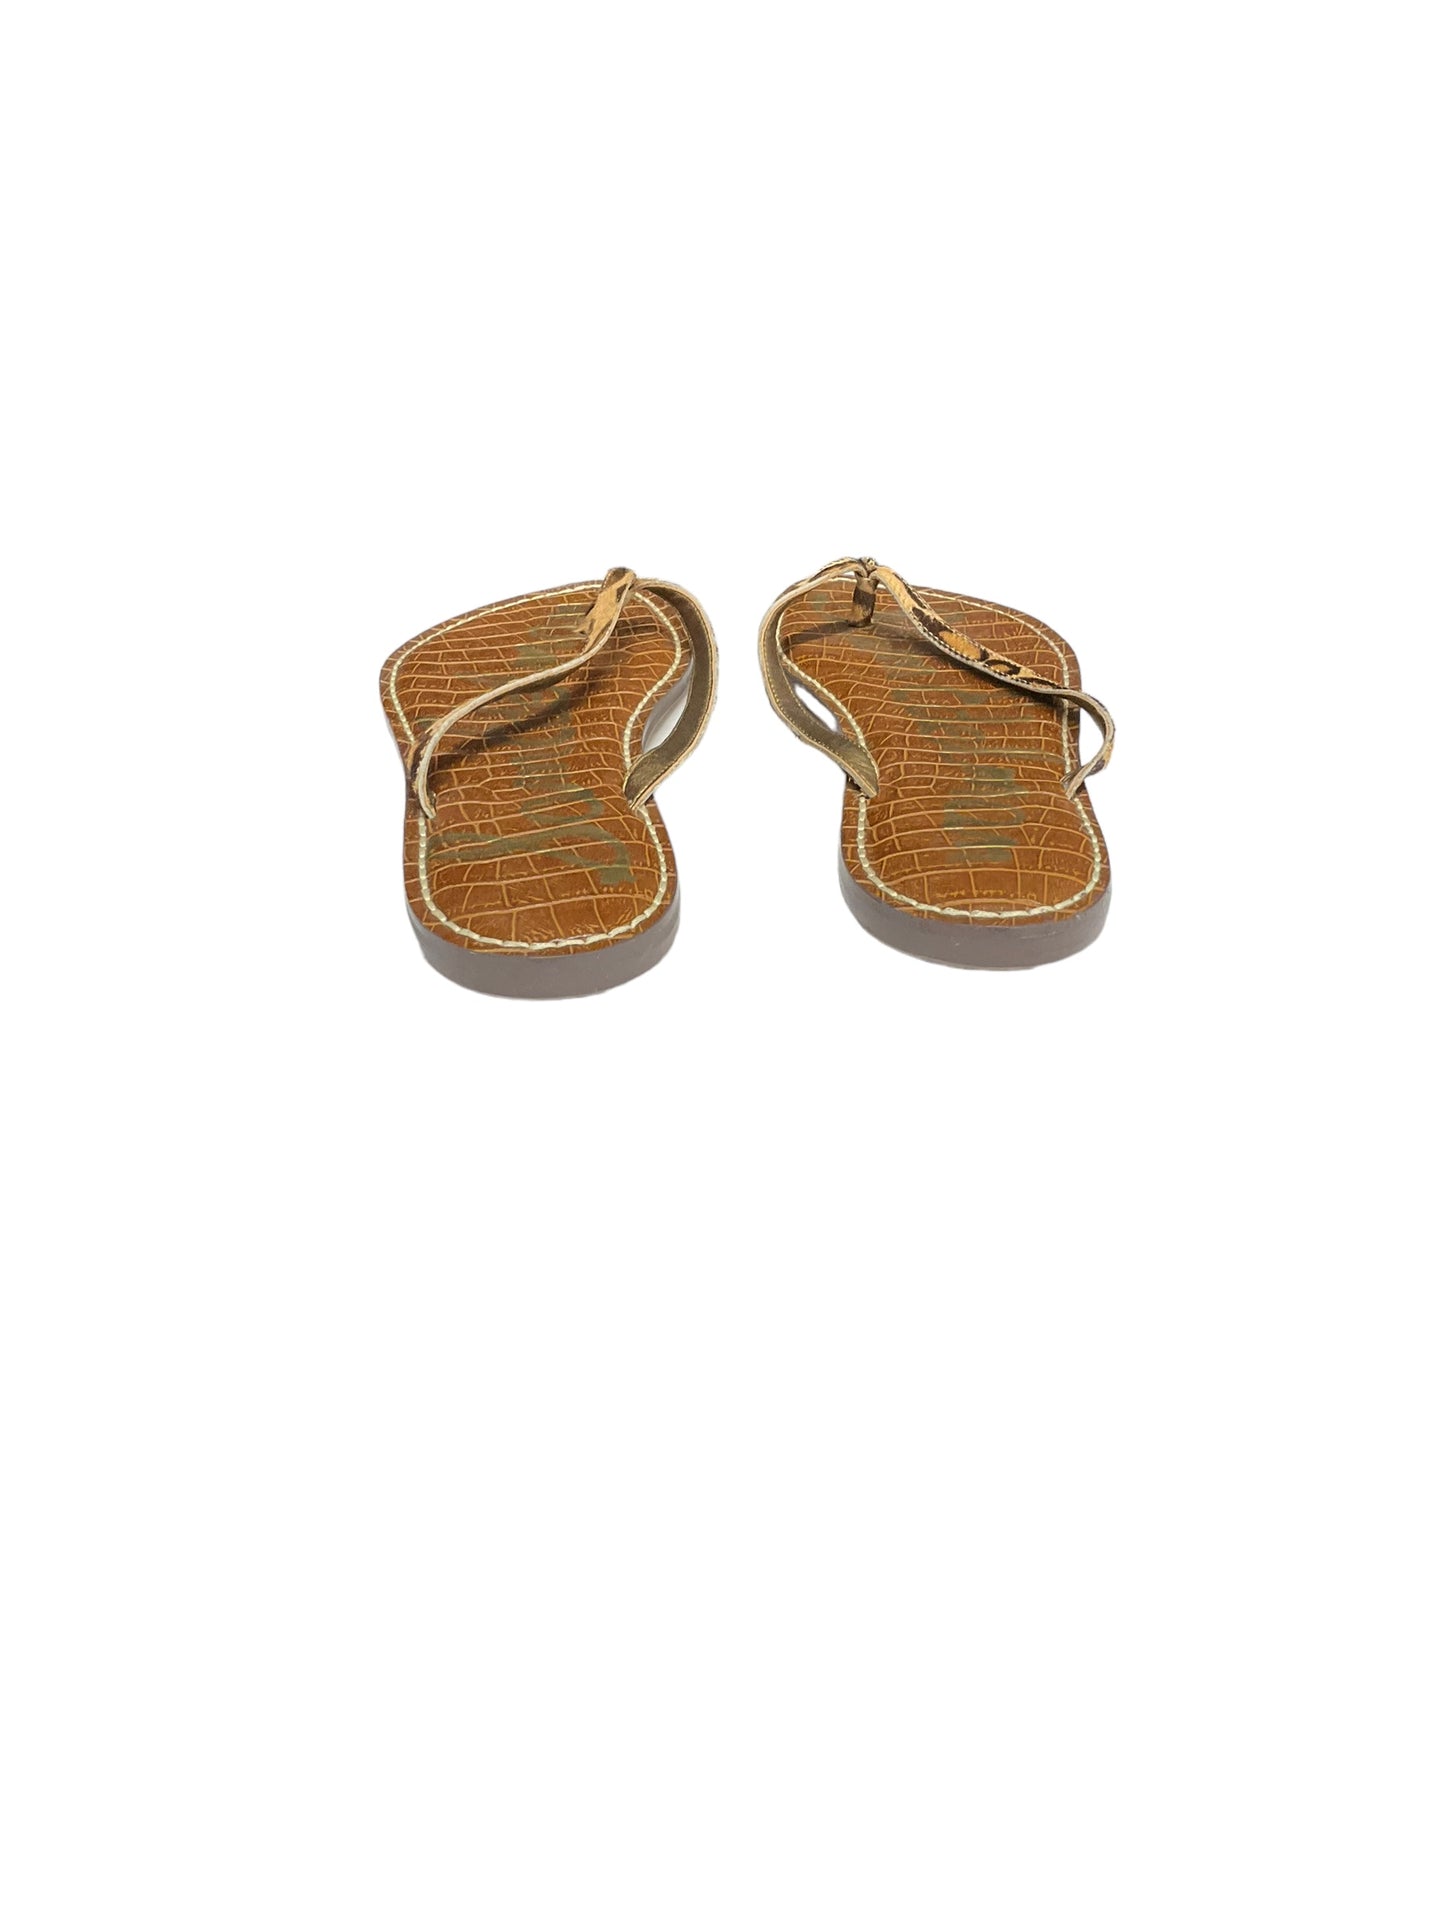 Sandals Flip Flops By Sam Edelman  Size: 9